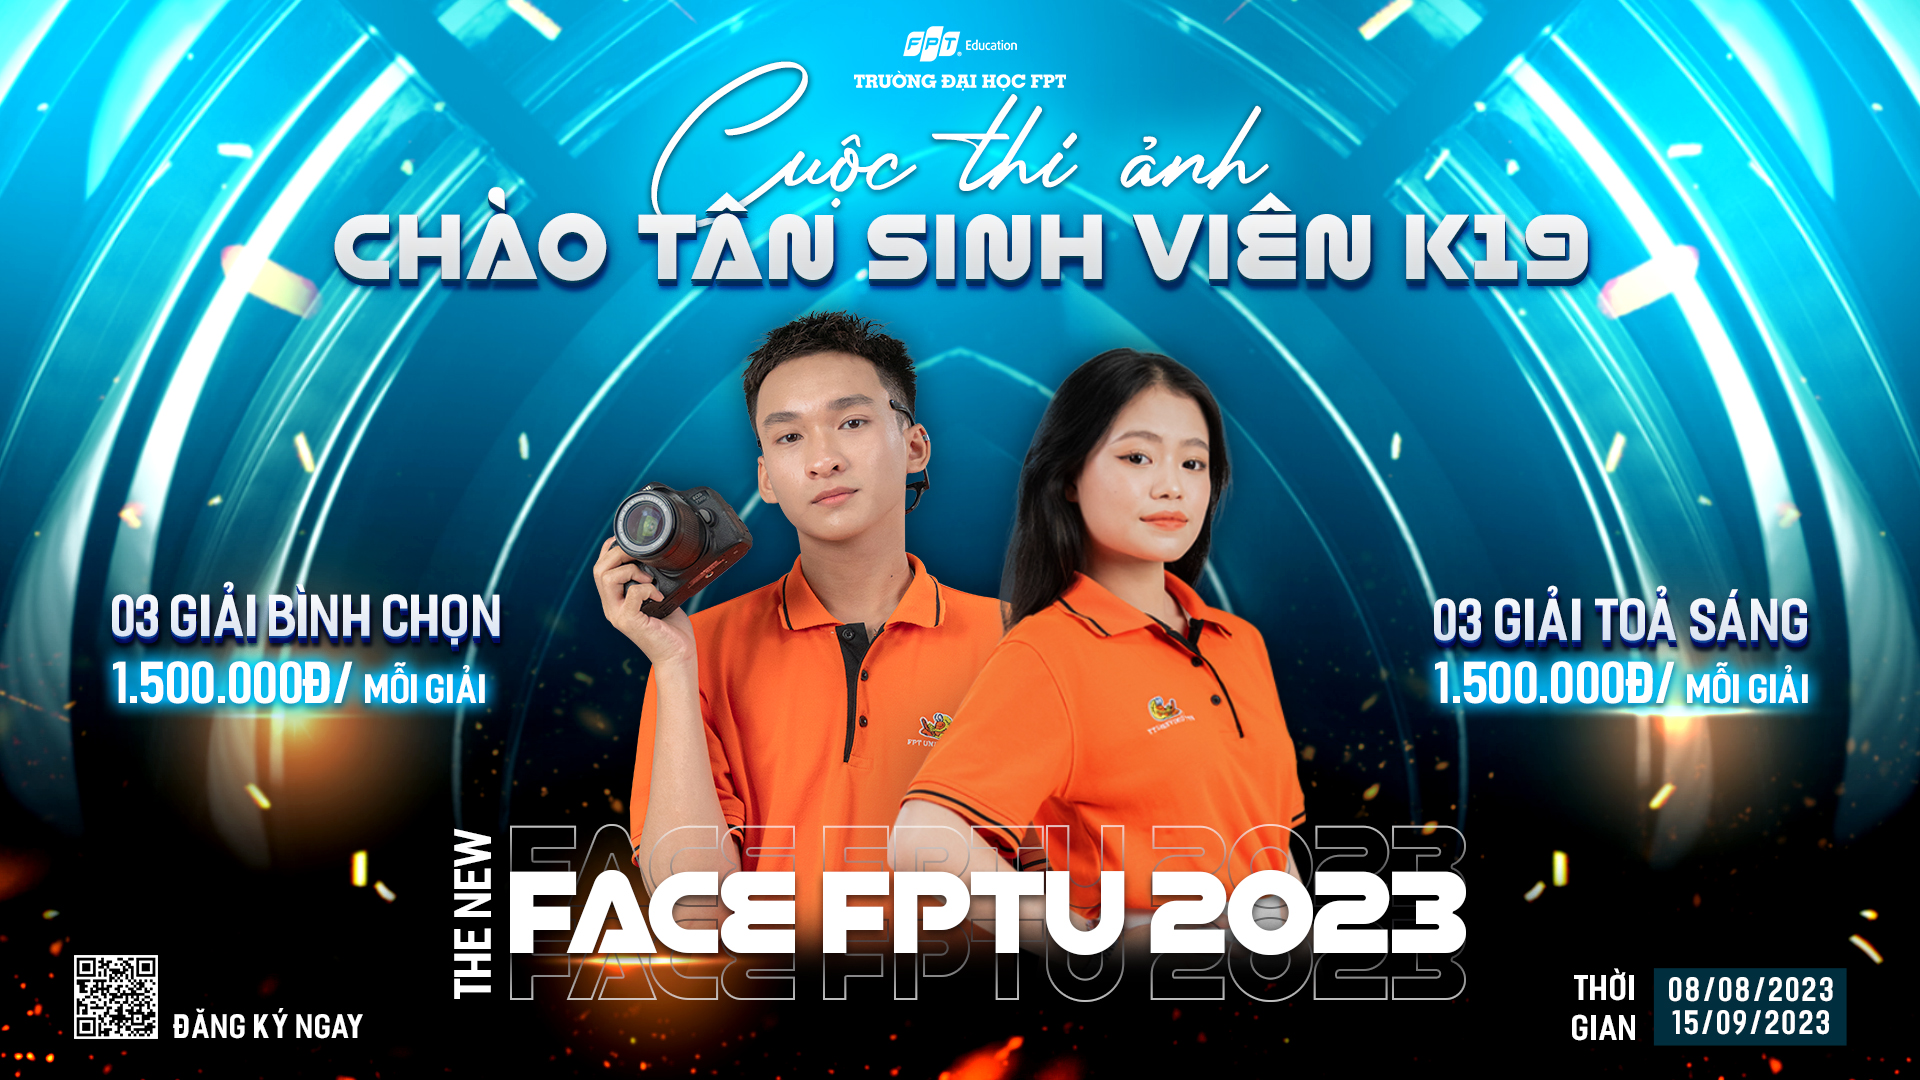 Thể lệ cuộc thi The New Face FPTU 2023